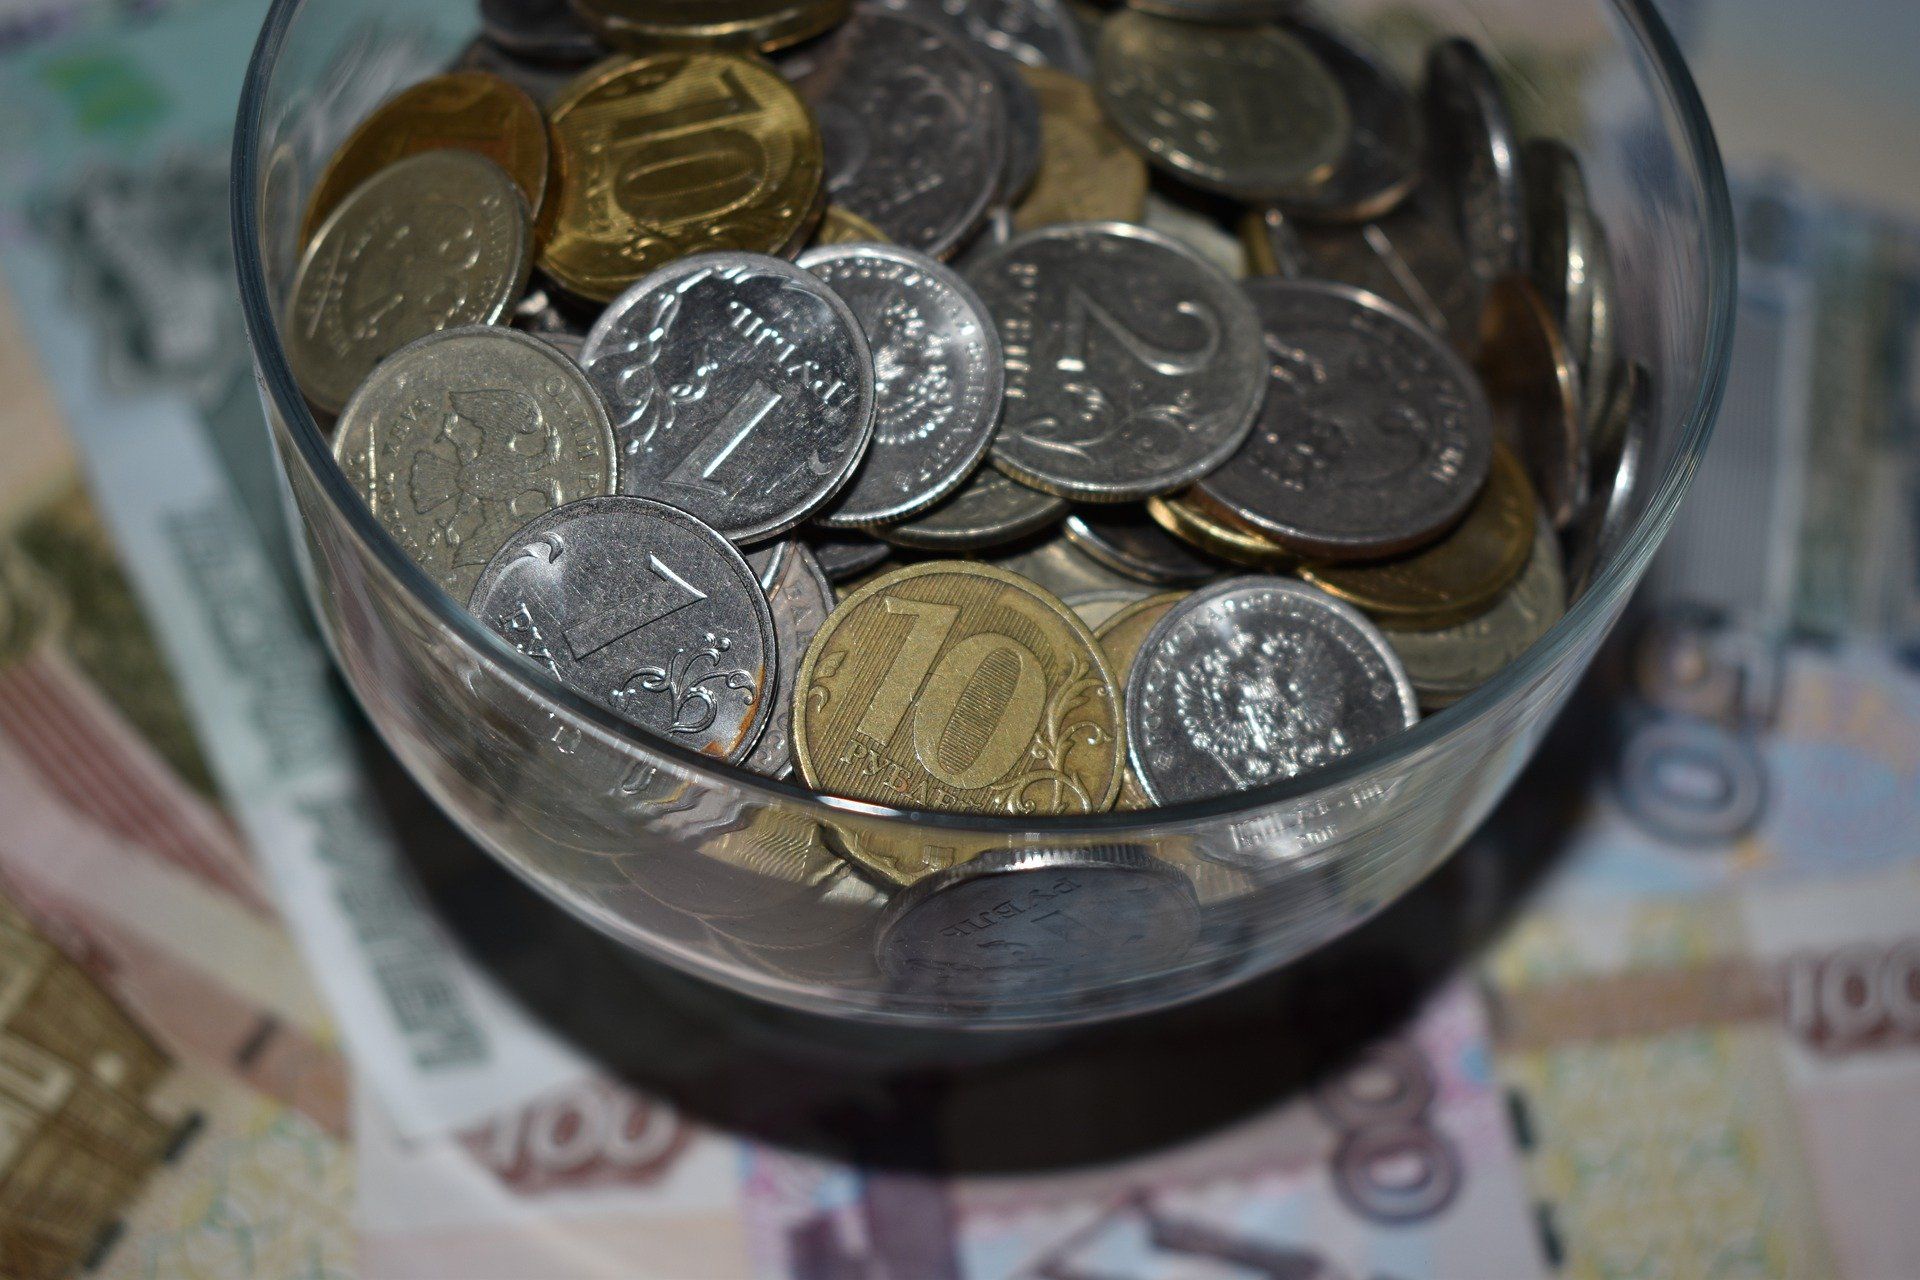 Банк России 29 апреля выпустит в обращение памятные монеты из серебра серии "100-летие образования Республики Татарстан" и другие